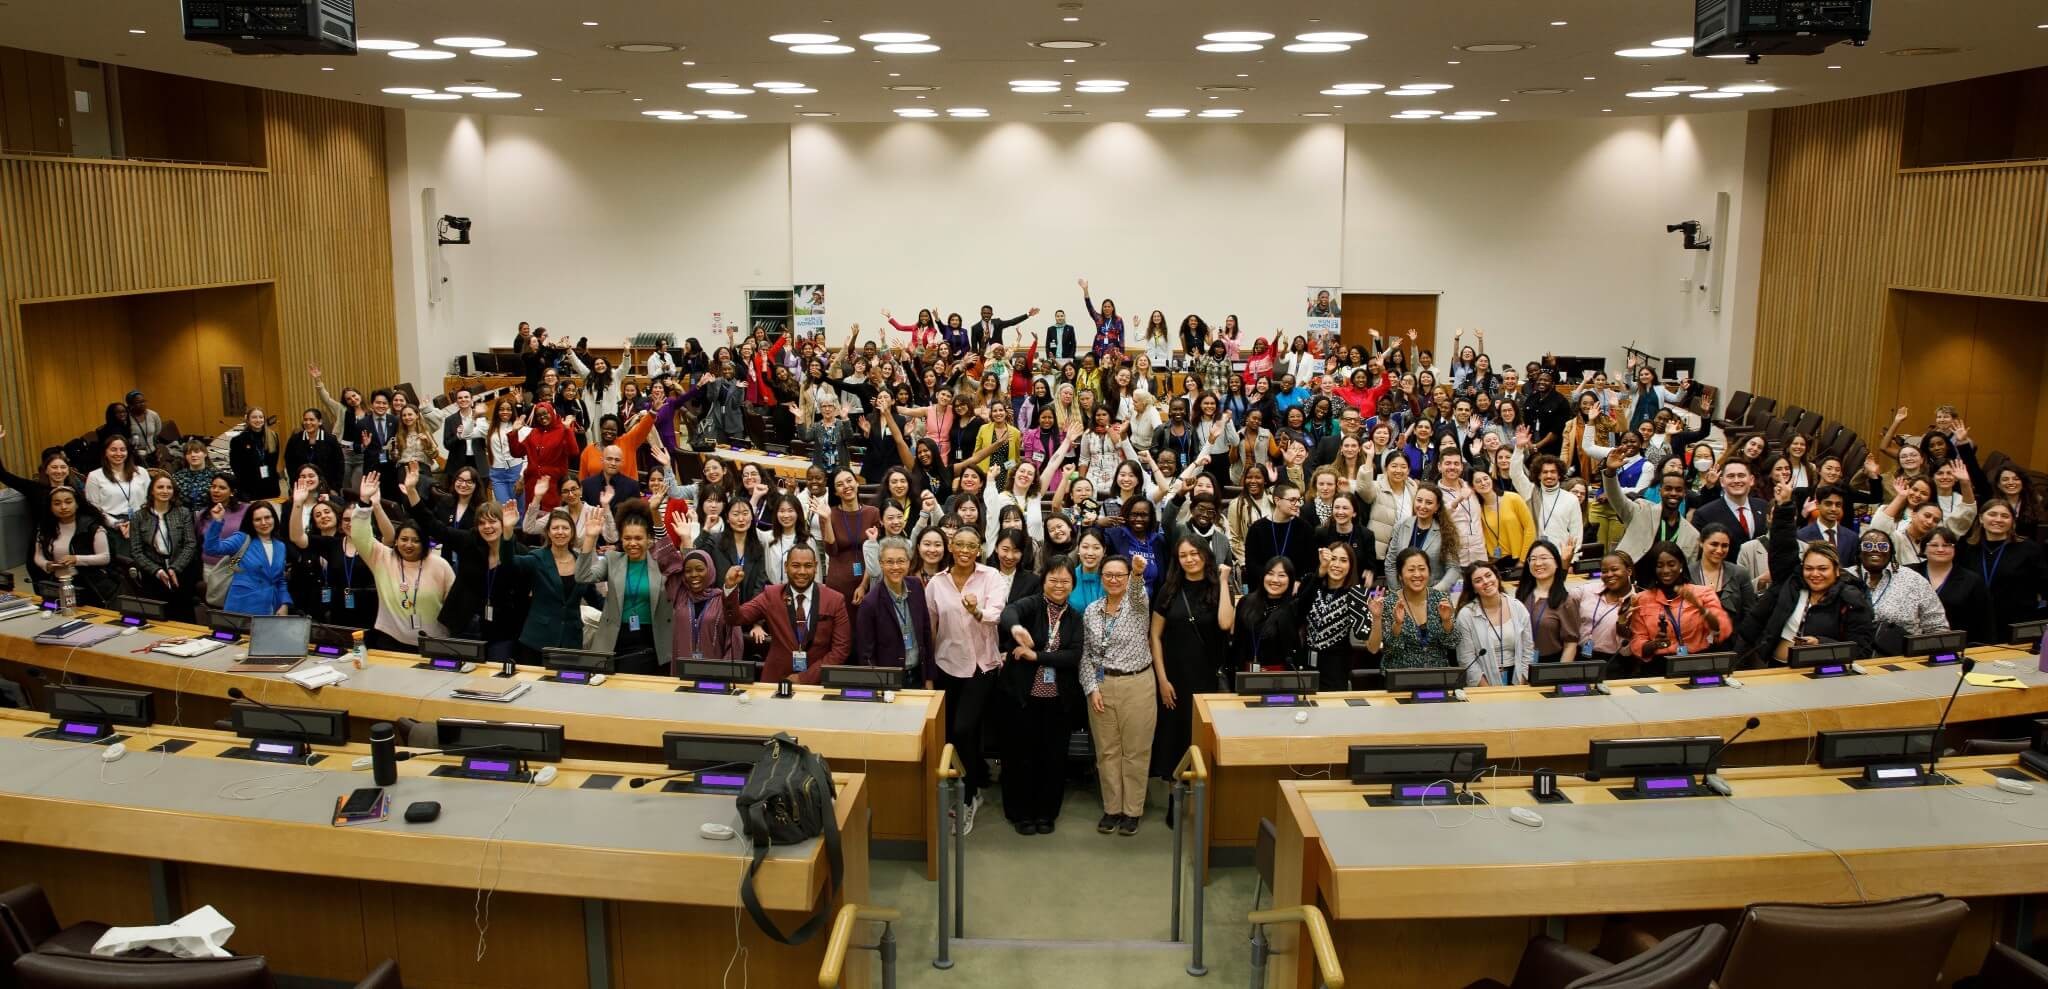 Le Forum Jeunesse a rassemblé une mosaïque dynamique de plus de 400 jeunes leaders du monde. Photo : ONU Femmes/Ryan Brown.